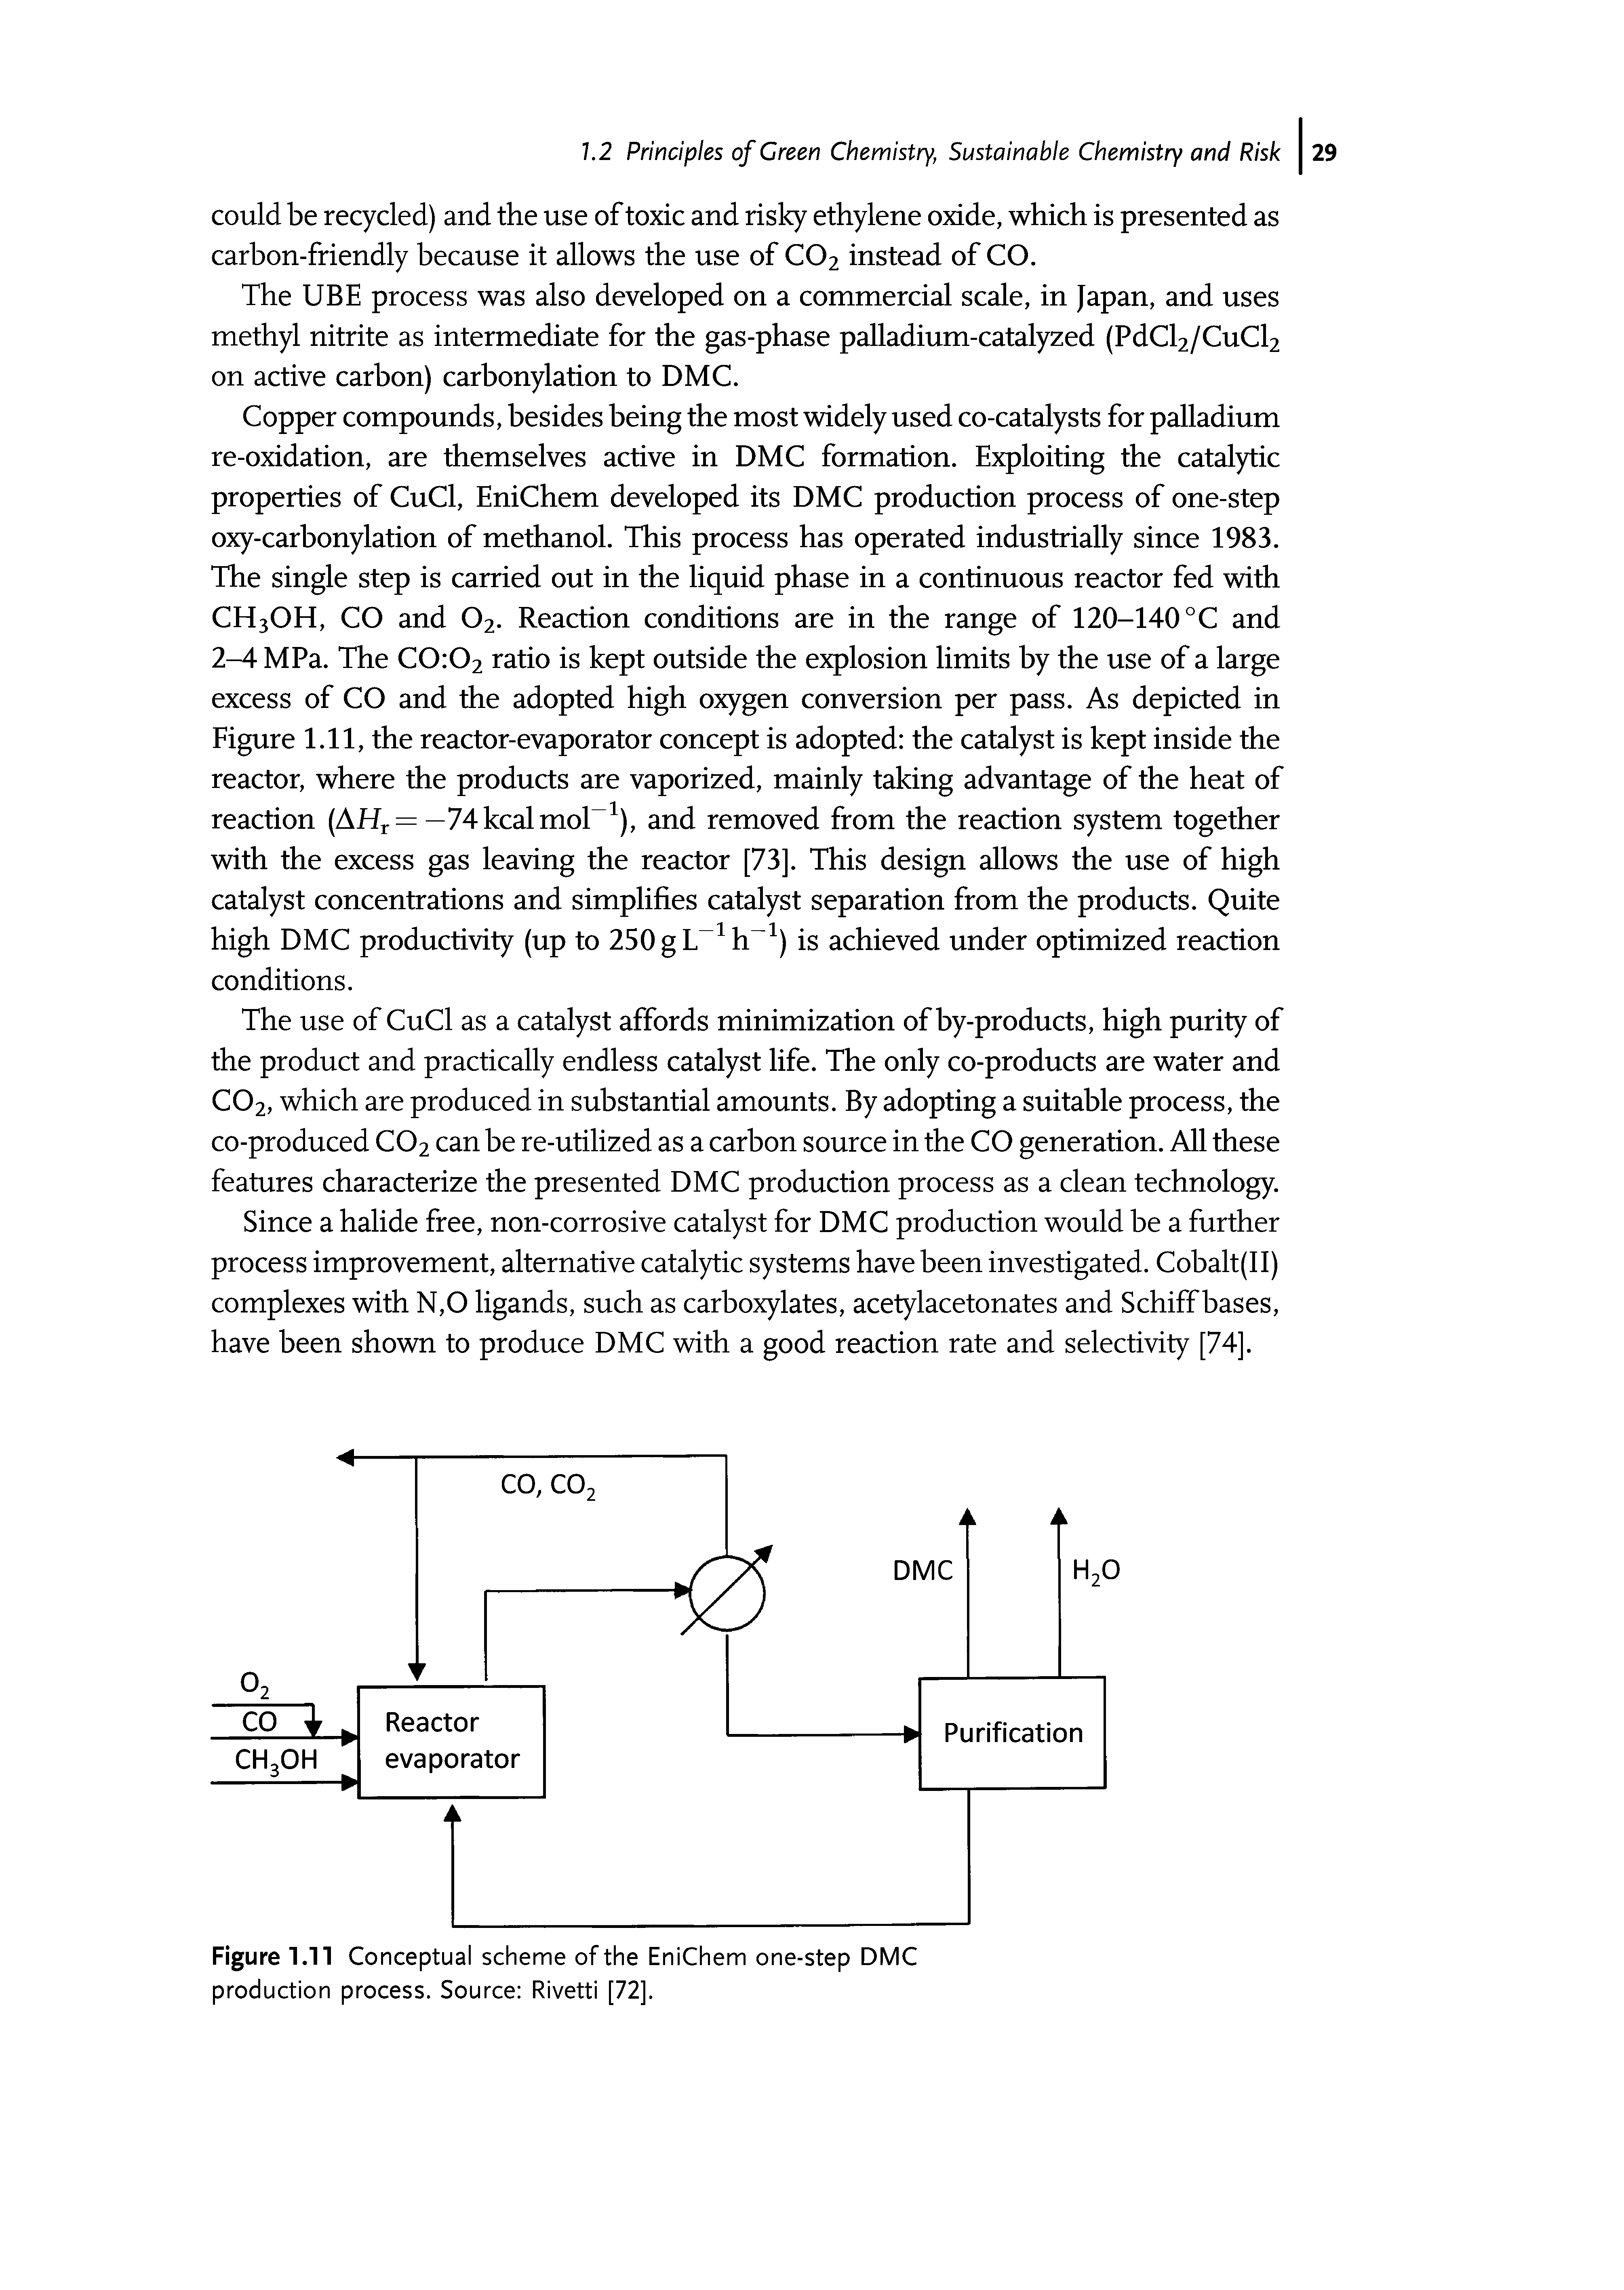 Figure 1.11 Conceptual scheme of the EniChem one-step DMC production process. Source Rivetti [72].